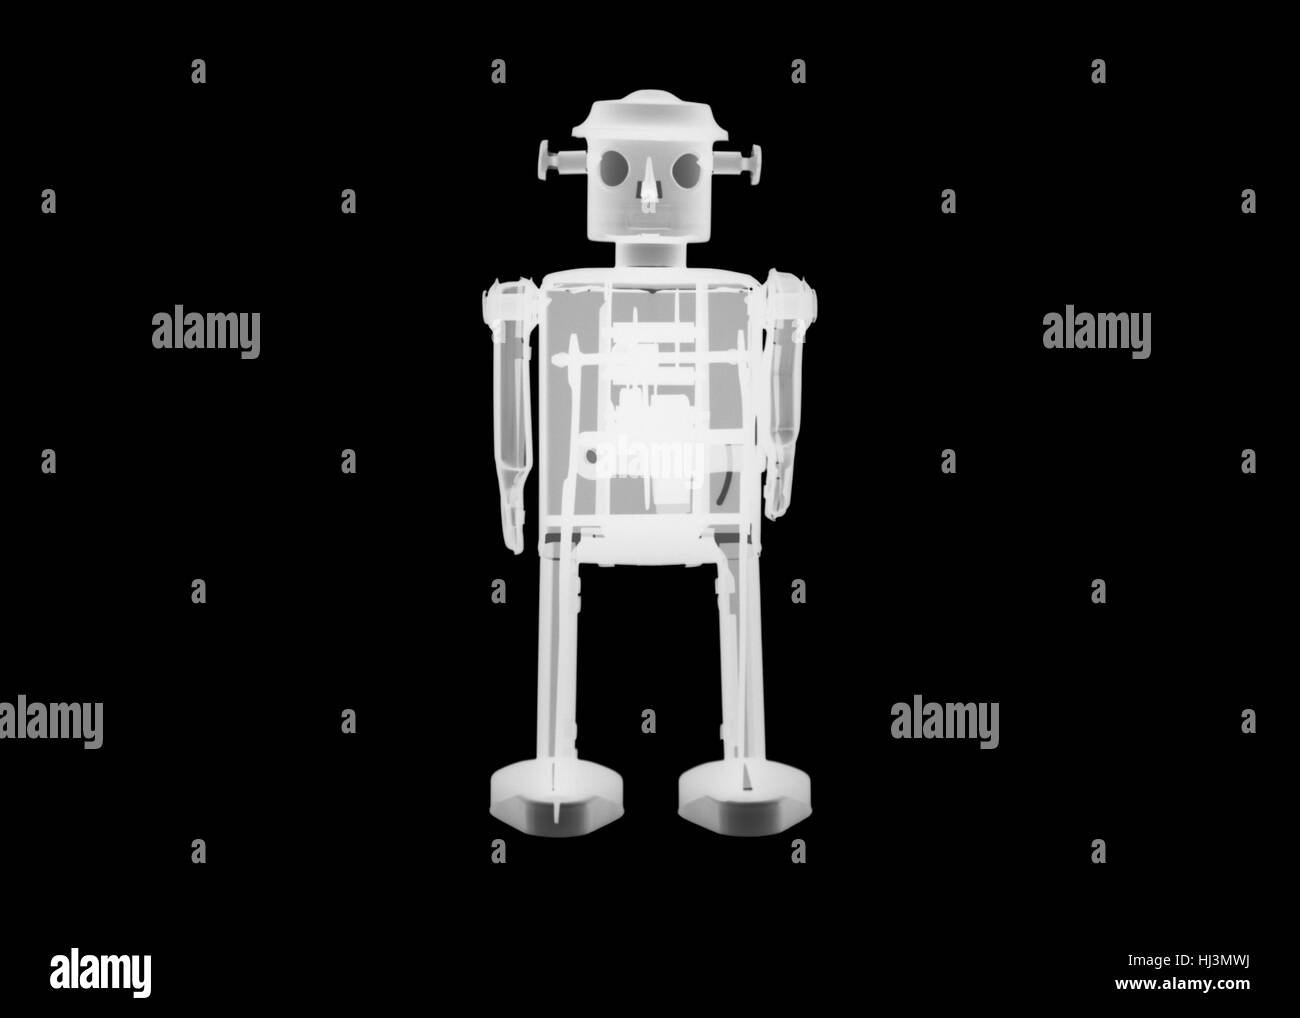 Tin toy robot X-ray. Stock Photo